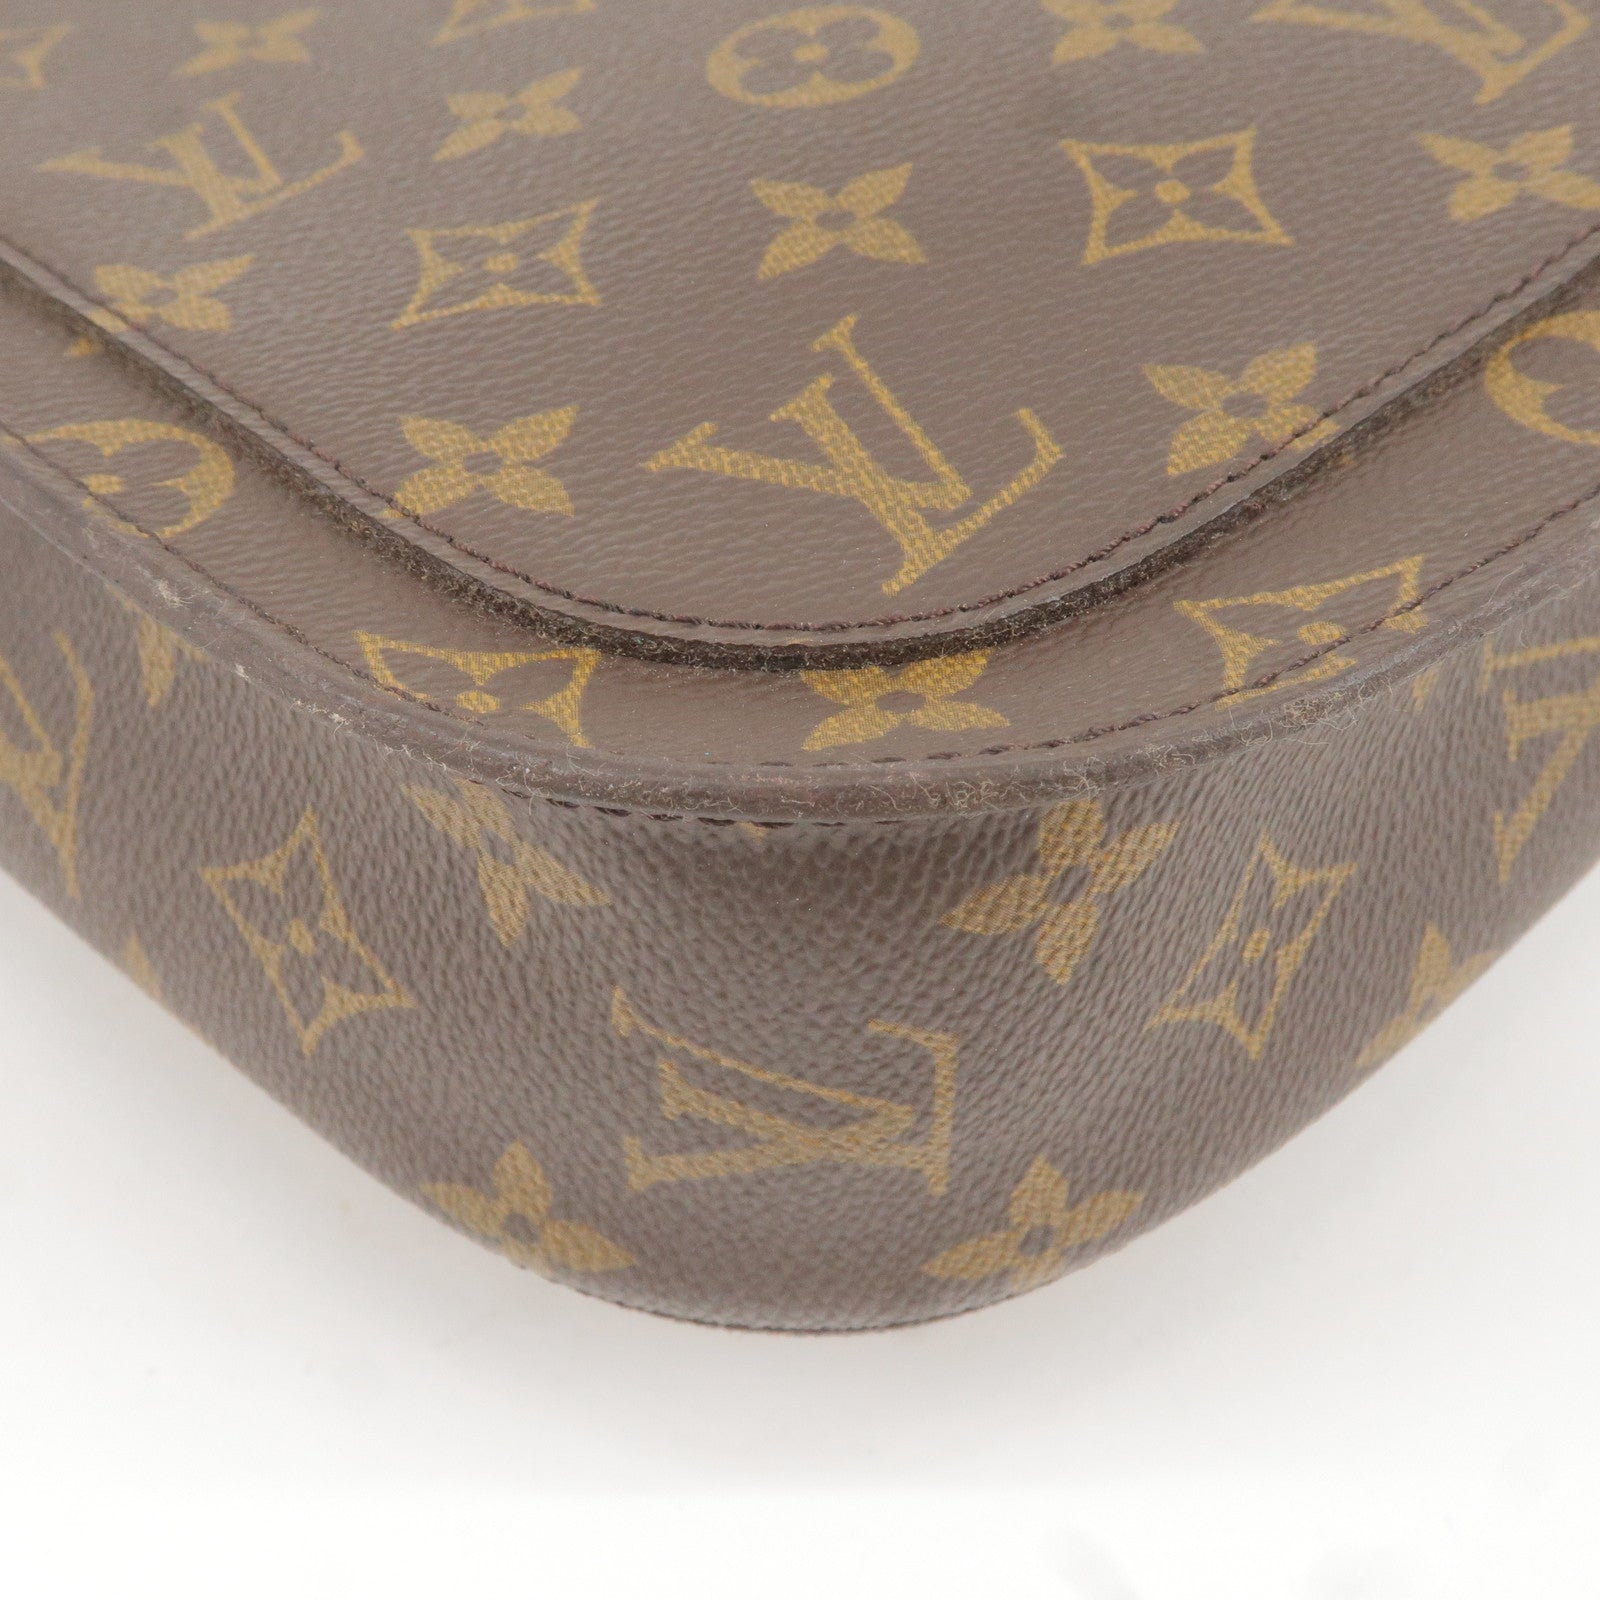 Louis Vuitton Bi Color Epi Leather Petite Noe Shoulder Bag Louis